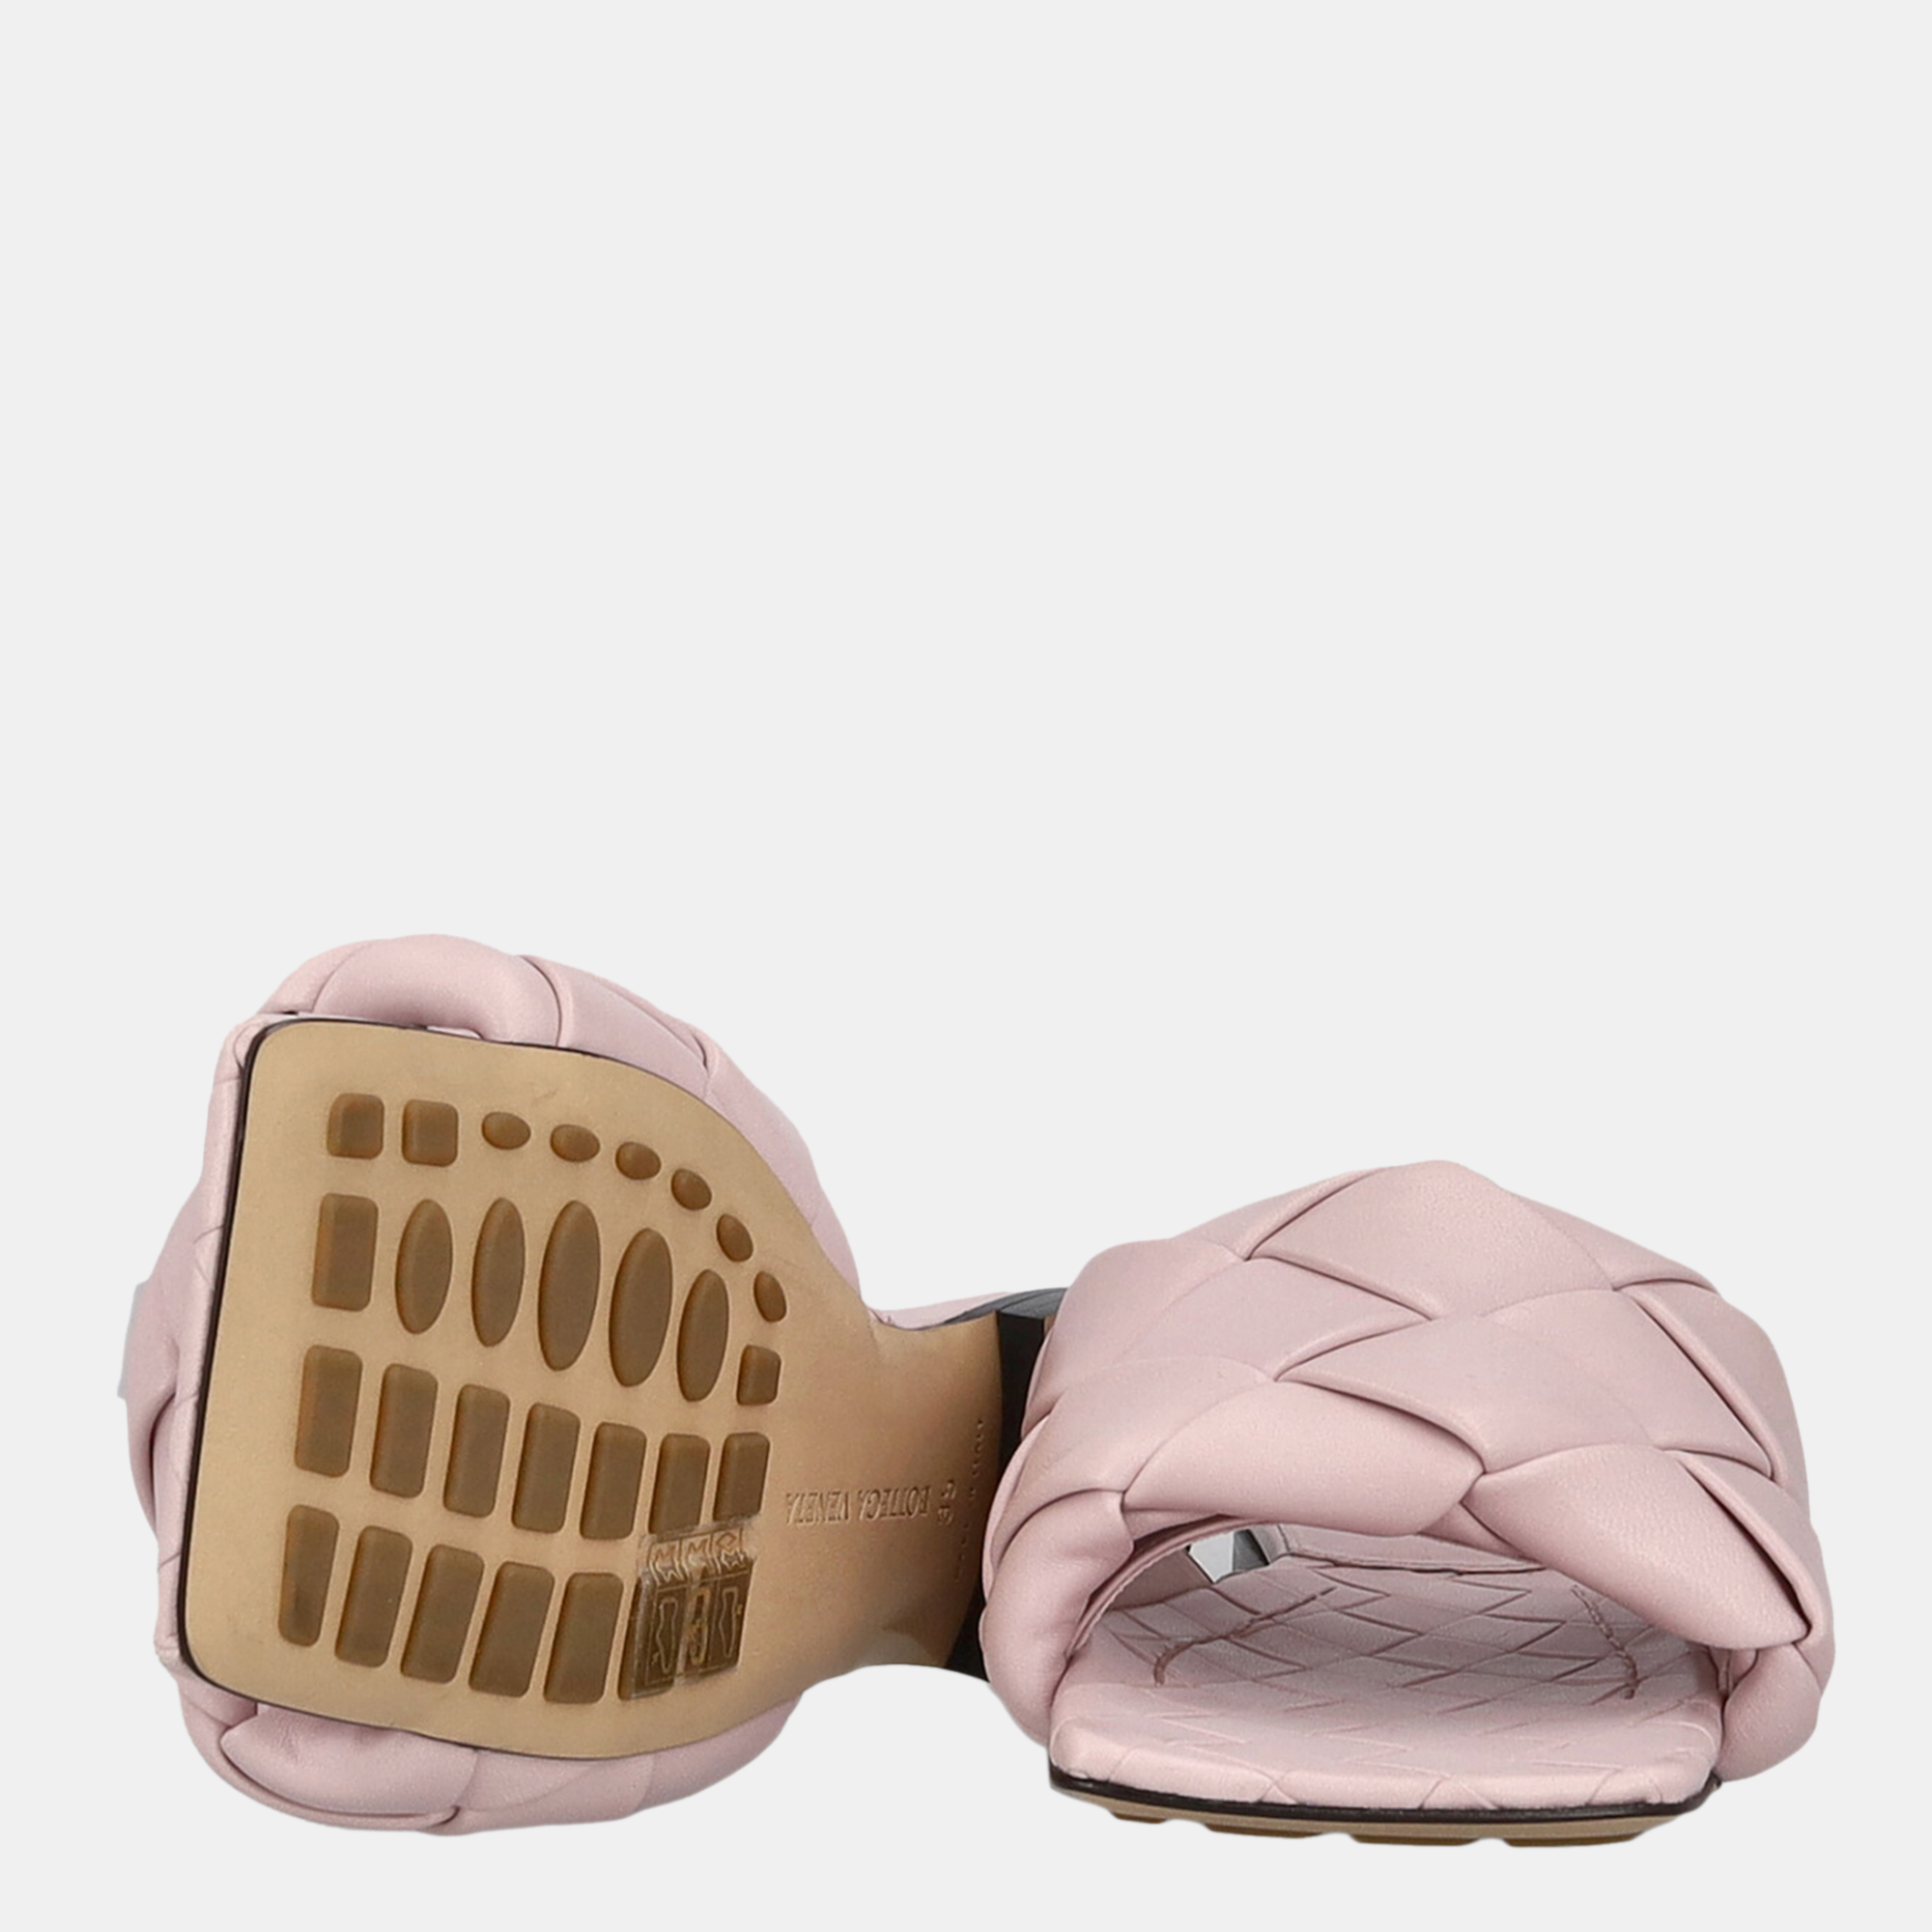 Bottega Veneta Women's Leather Slippers - Pink - EU 35